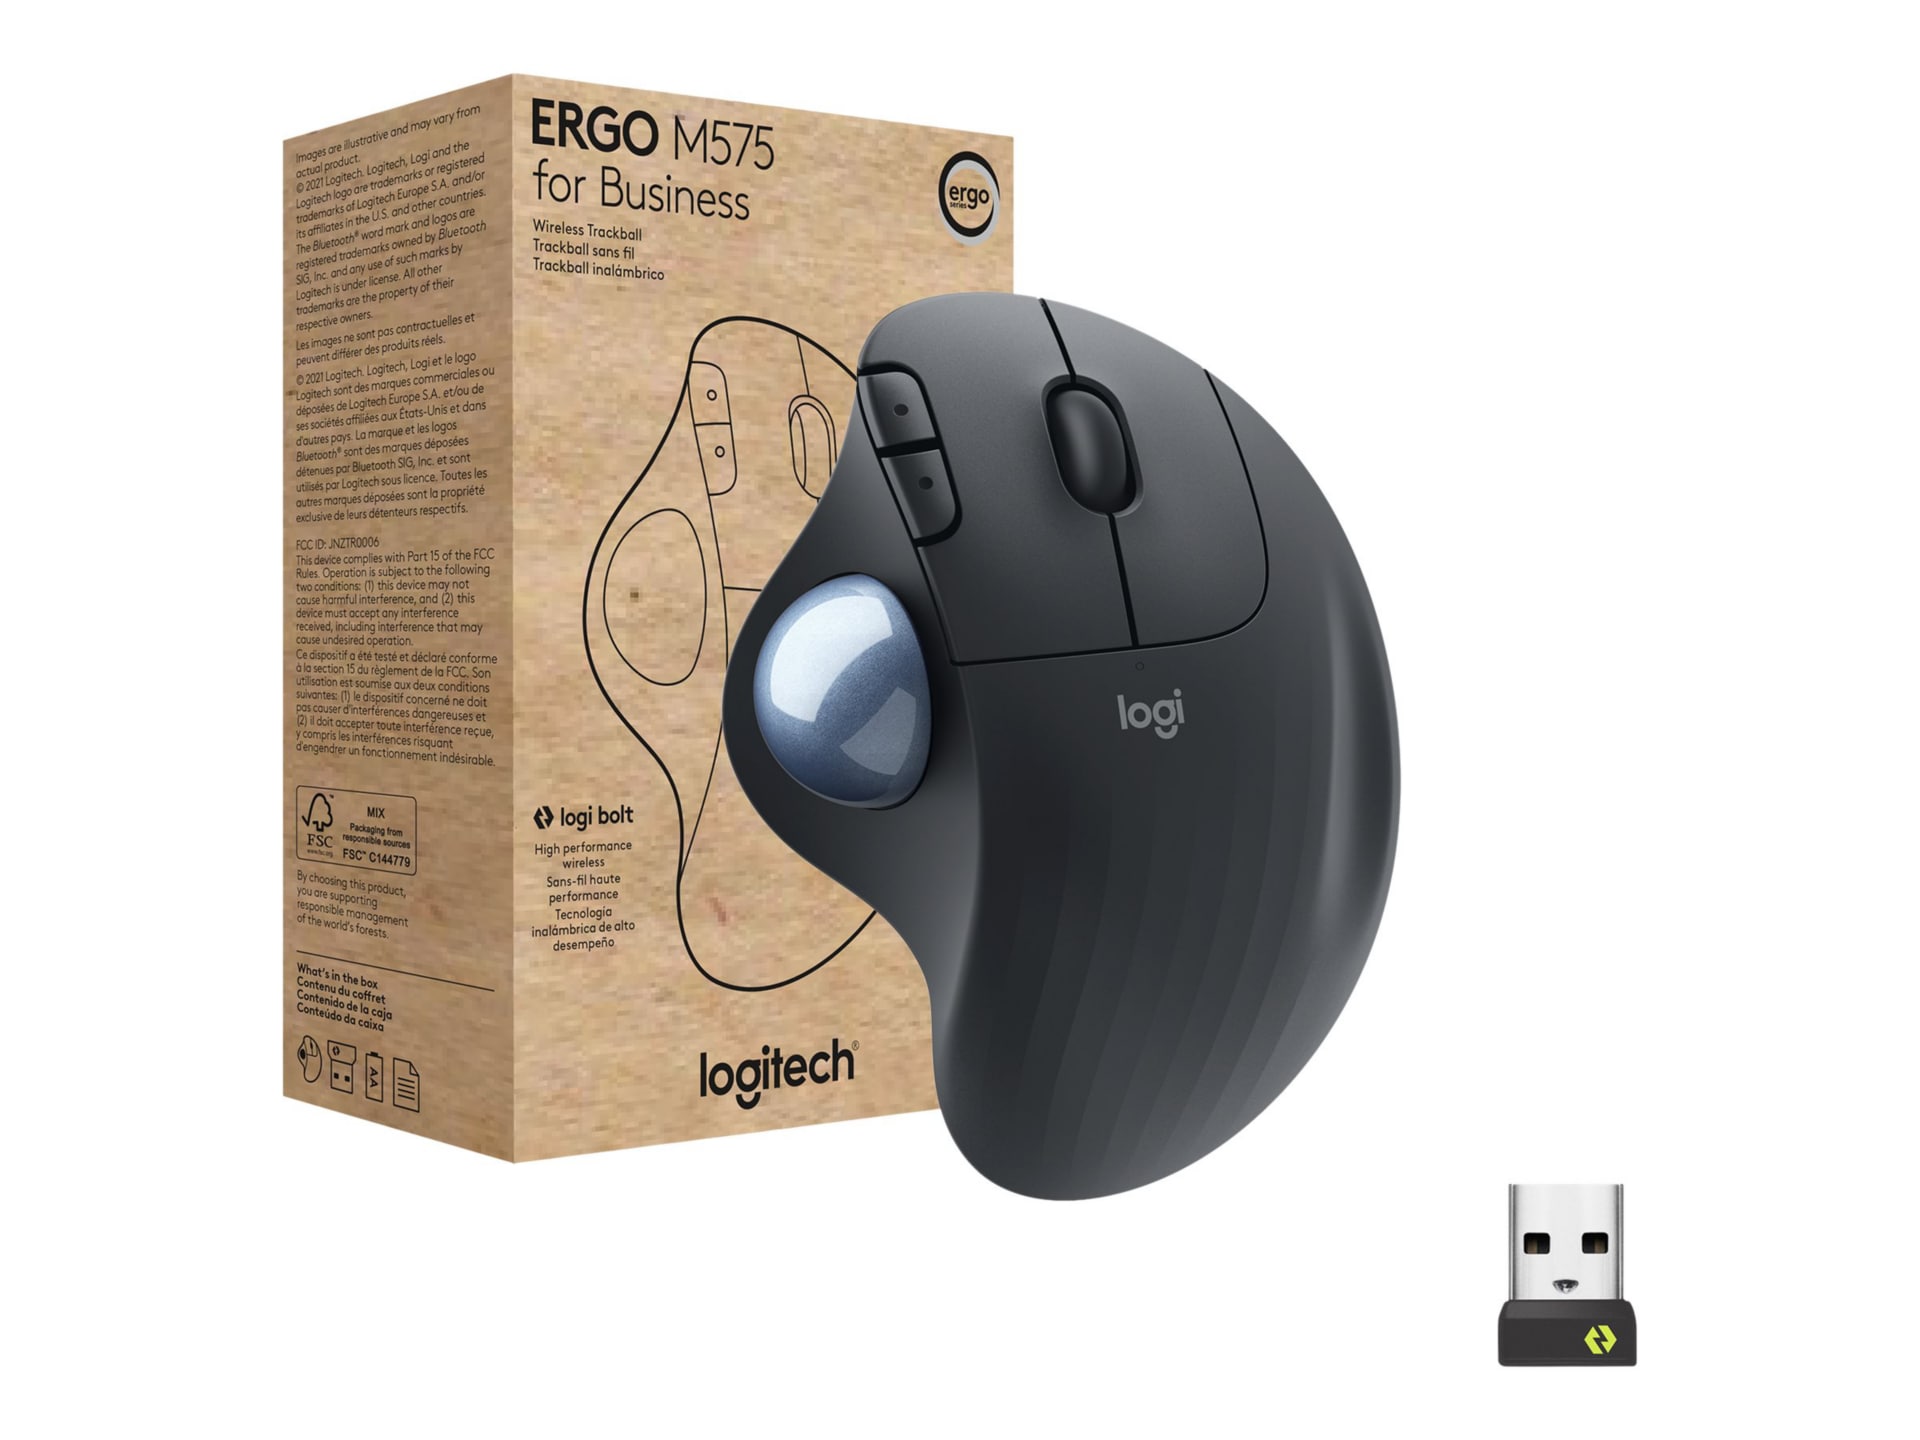 miste dig selv trængsler Render Logitech ERGO M575 for Business - trackball - 2.4 GHz, Bluetooth 5.0 LE -  graphite - 910-006197 - Mice - CDW.com